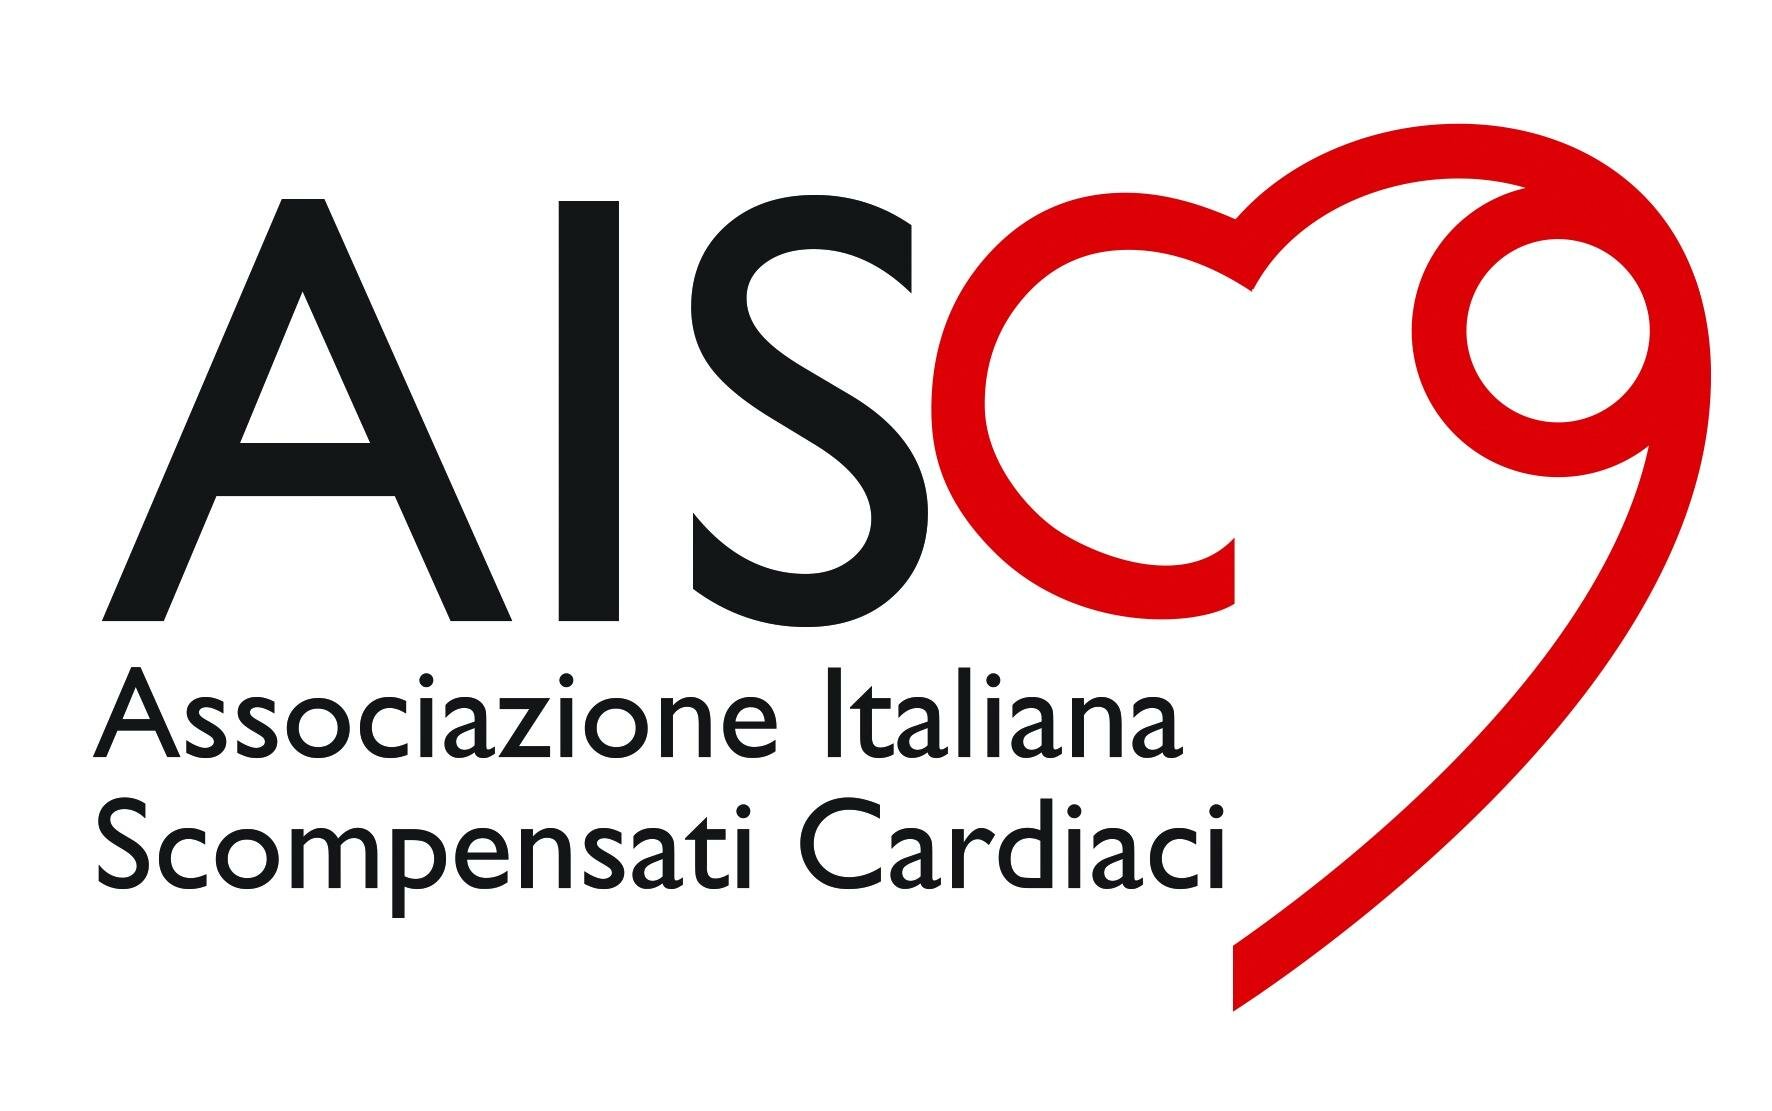 AISC – Associazione Italiana Scompensati Cardiaci